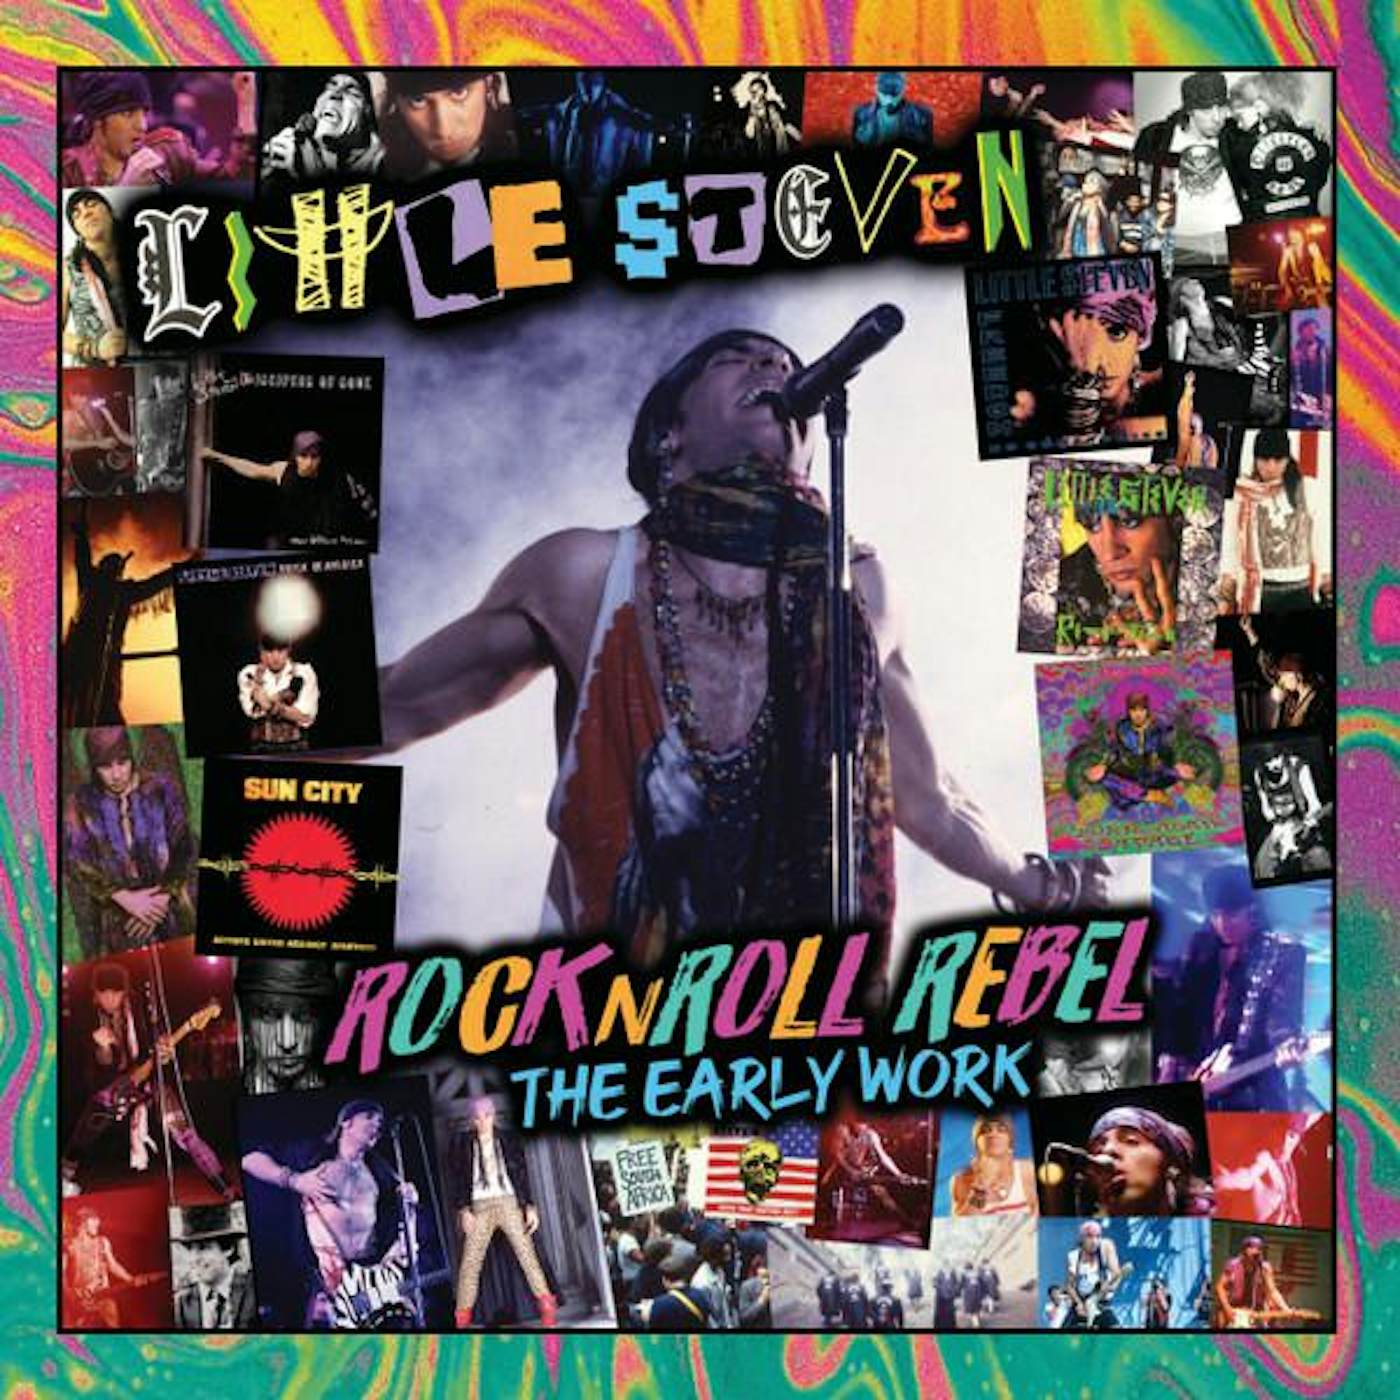 Little Steven ROCK N ROLL REBEL: THE EARLY WORK CD